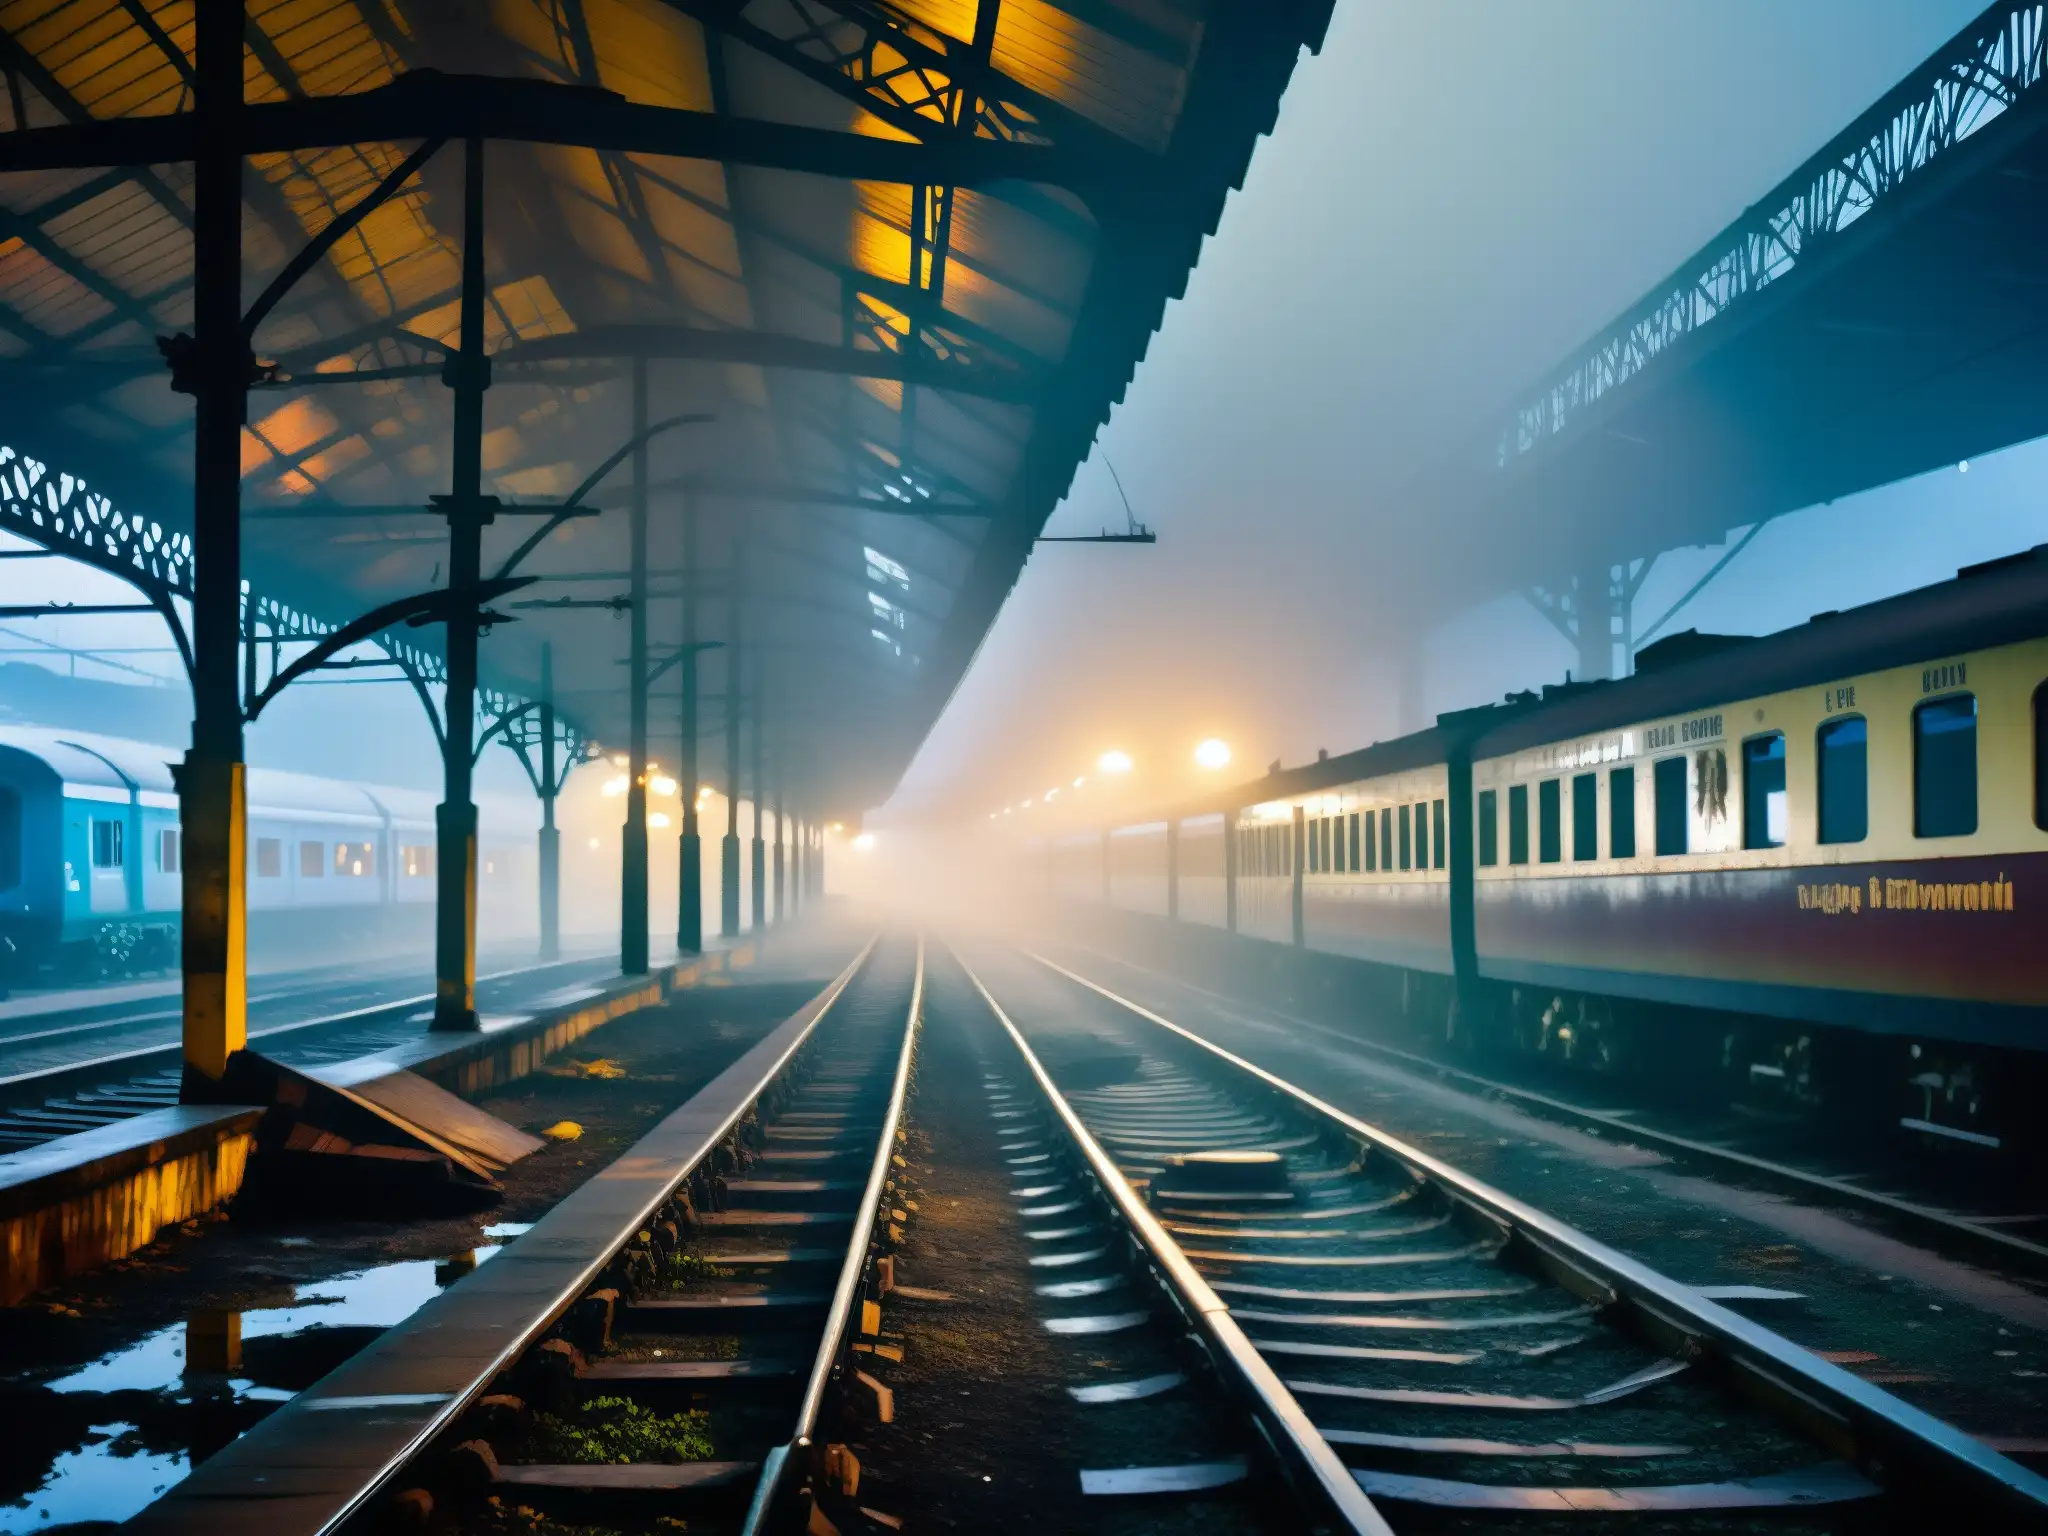 La misteriosa estación de tren abandonada de Howrah, con vías oxidadas y un resplandor sobrenatural en las plataformas, evoca la atmósfera inquietante de los legendarios trenes fantasma de Howrah